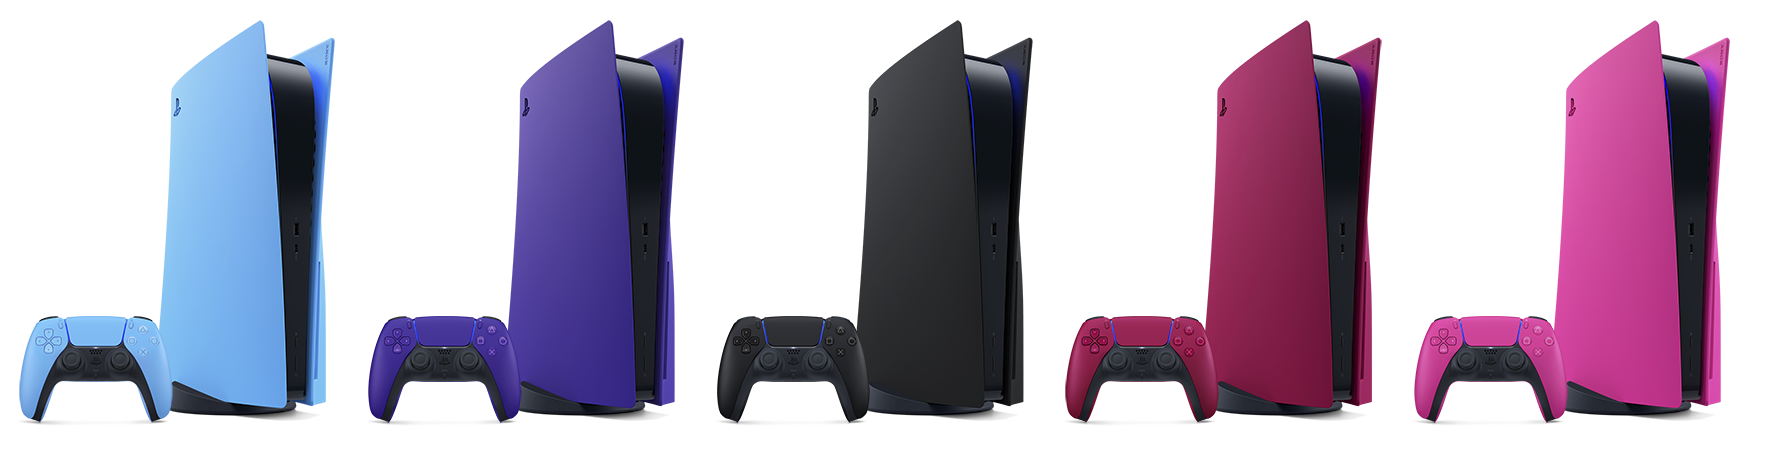 Vijf PS5-panelen in verschillende kleuren